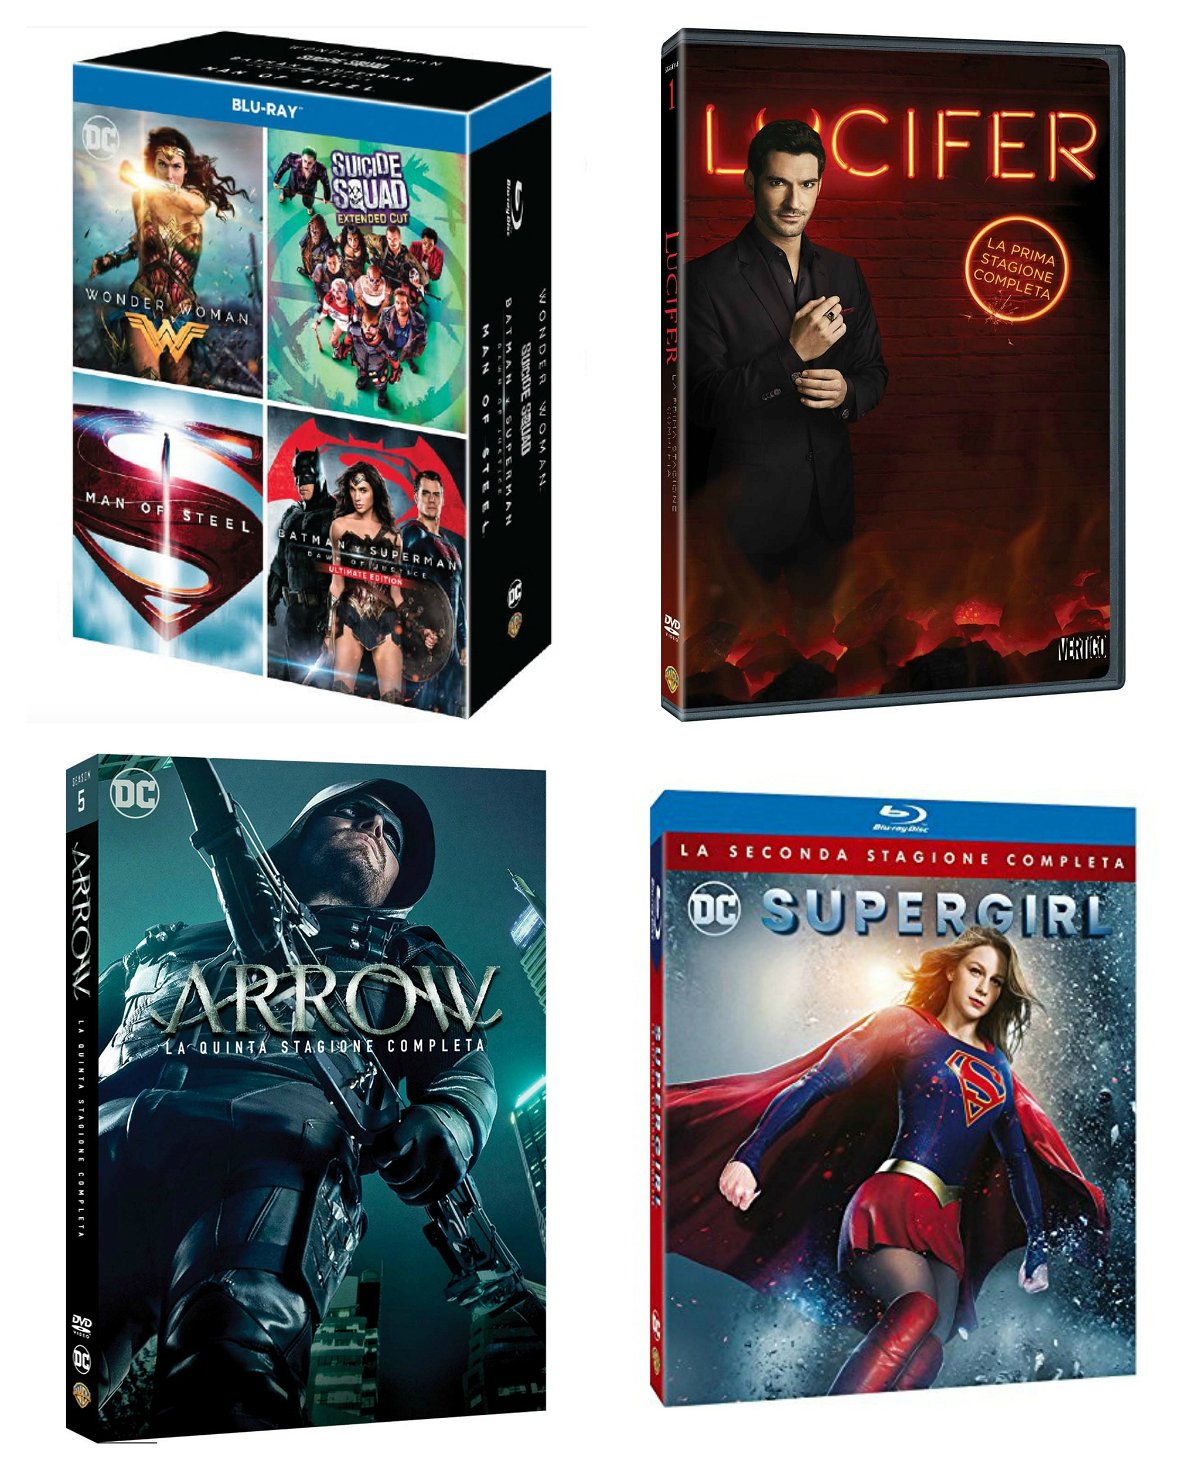 Film e serie TV dedicati ai personaggi DC Comics in uscita a novembre 2017